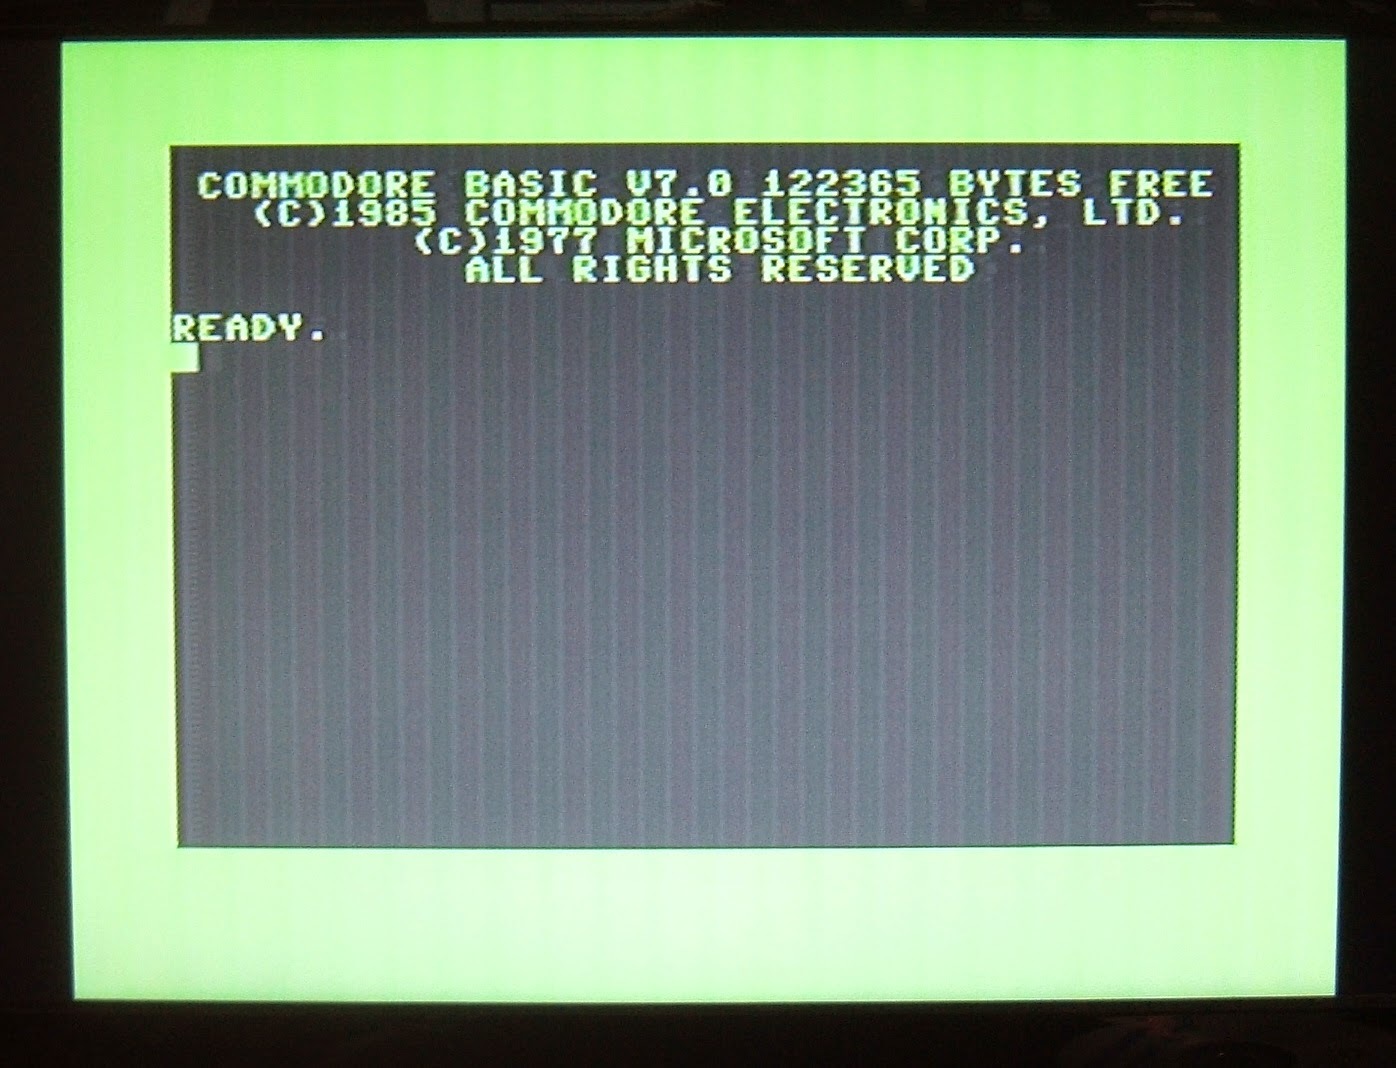 16 GB Microsd Card Deluxe Commodore 128 Hard Drive for Raspberry Pi 4-400